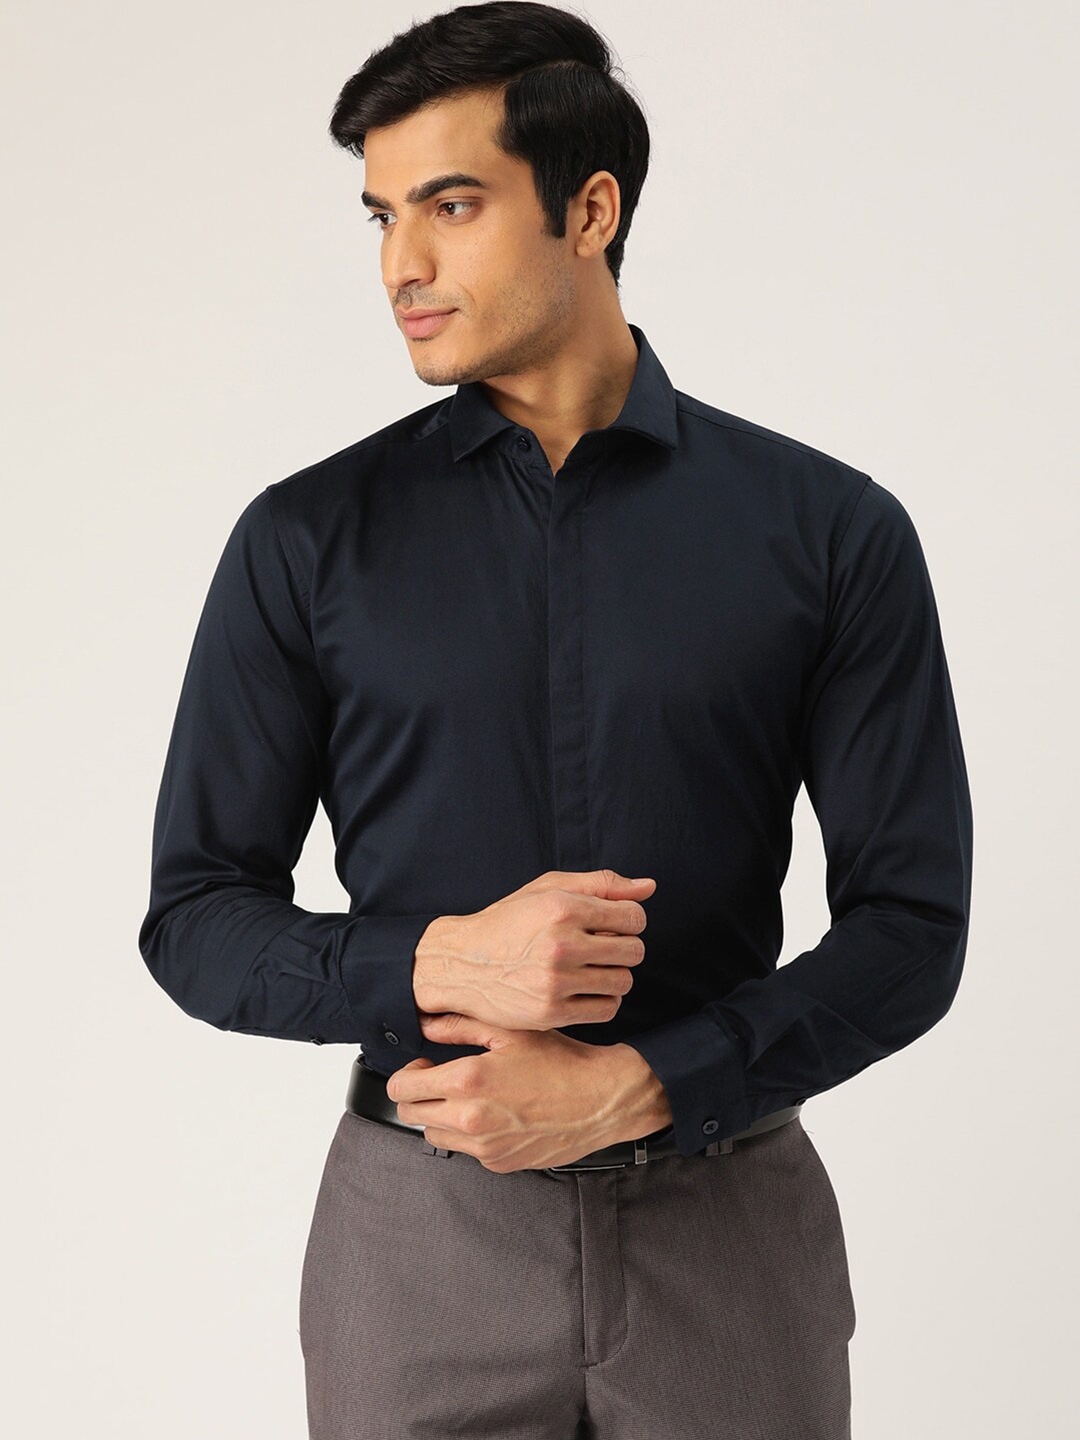 Buy STROP Men Navy Blue Solid Slim Fit Formal Shirt - Shirts for Men ...